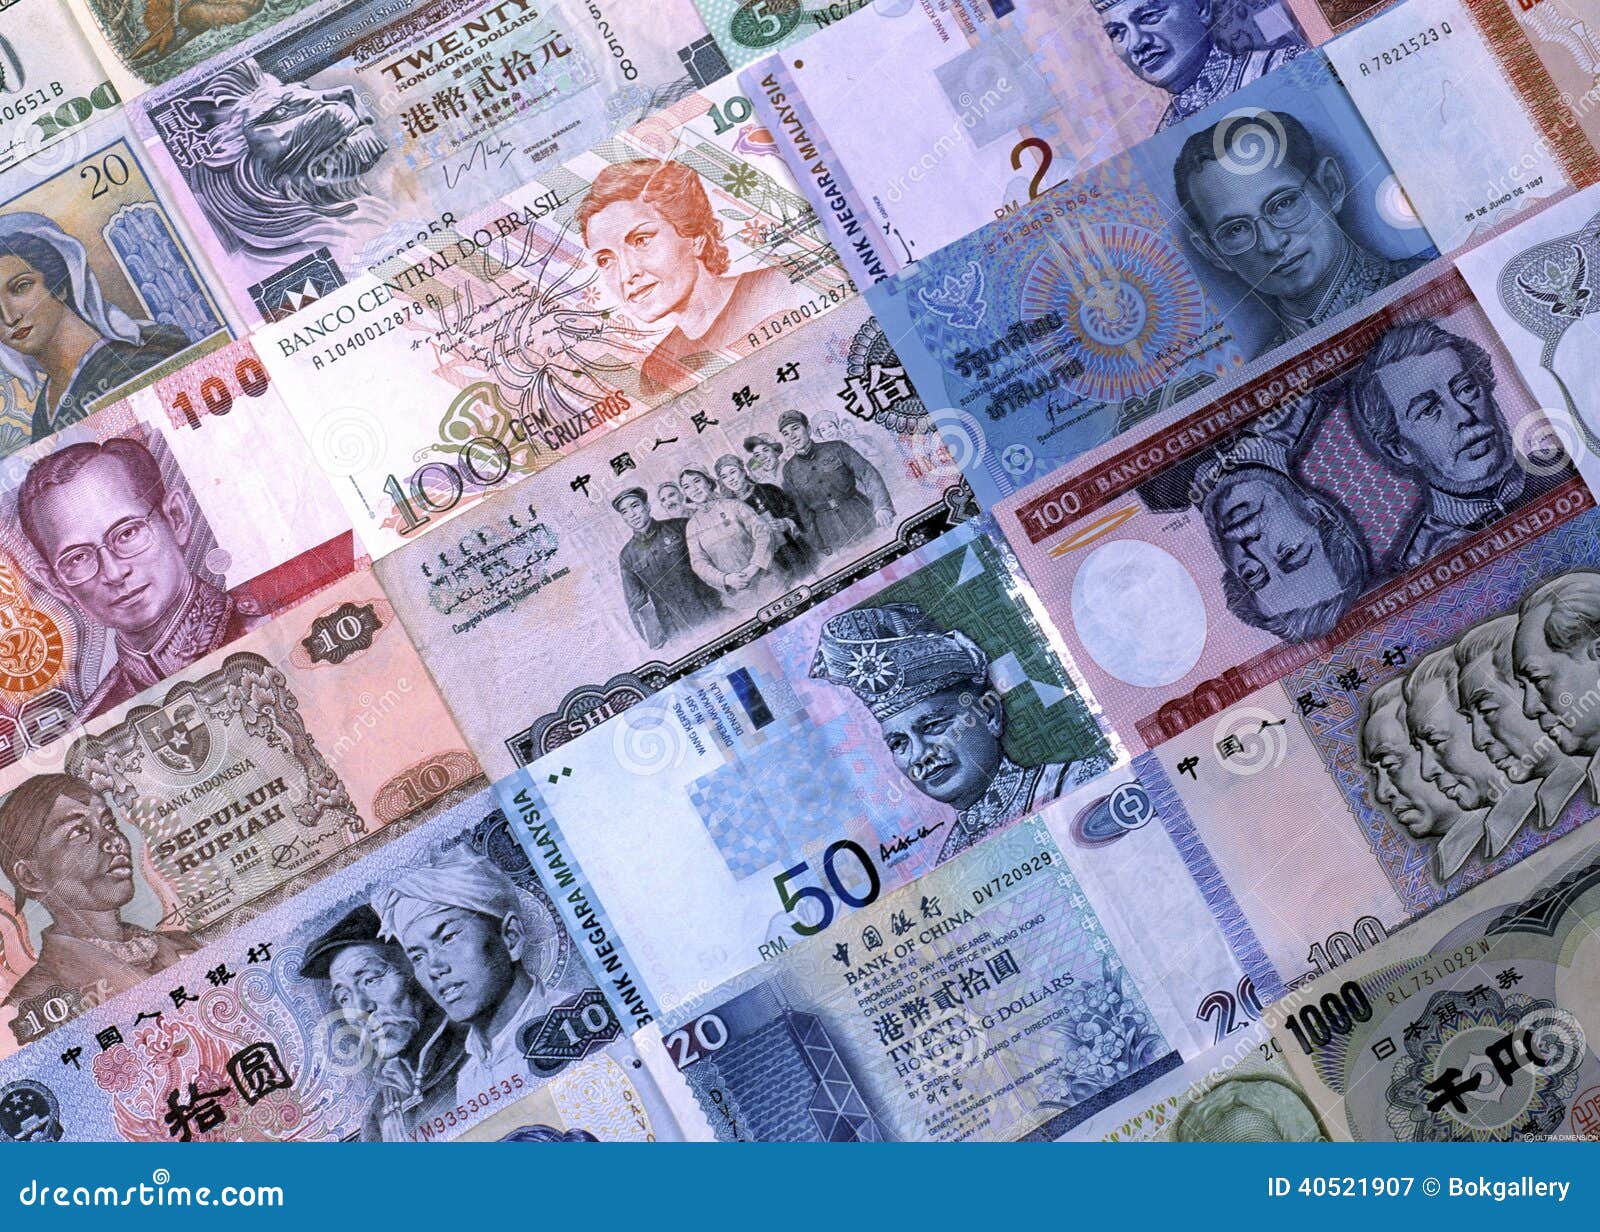 Соответствующая иностранная валюта. Иностранная валюта. Иностранная валюта картинки. Иностранные валюты в Цветном изображении. Валюта синего цвета.